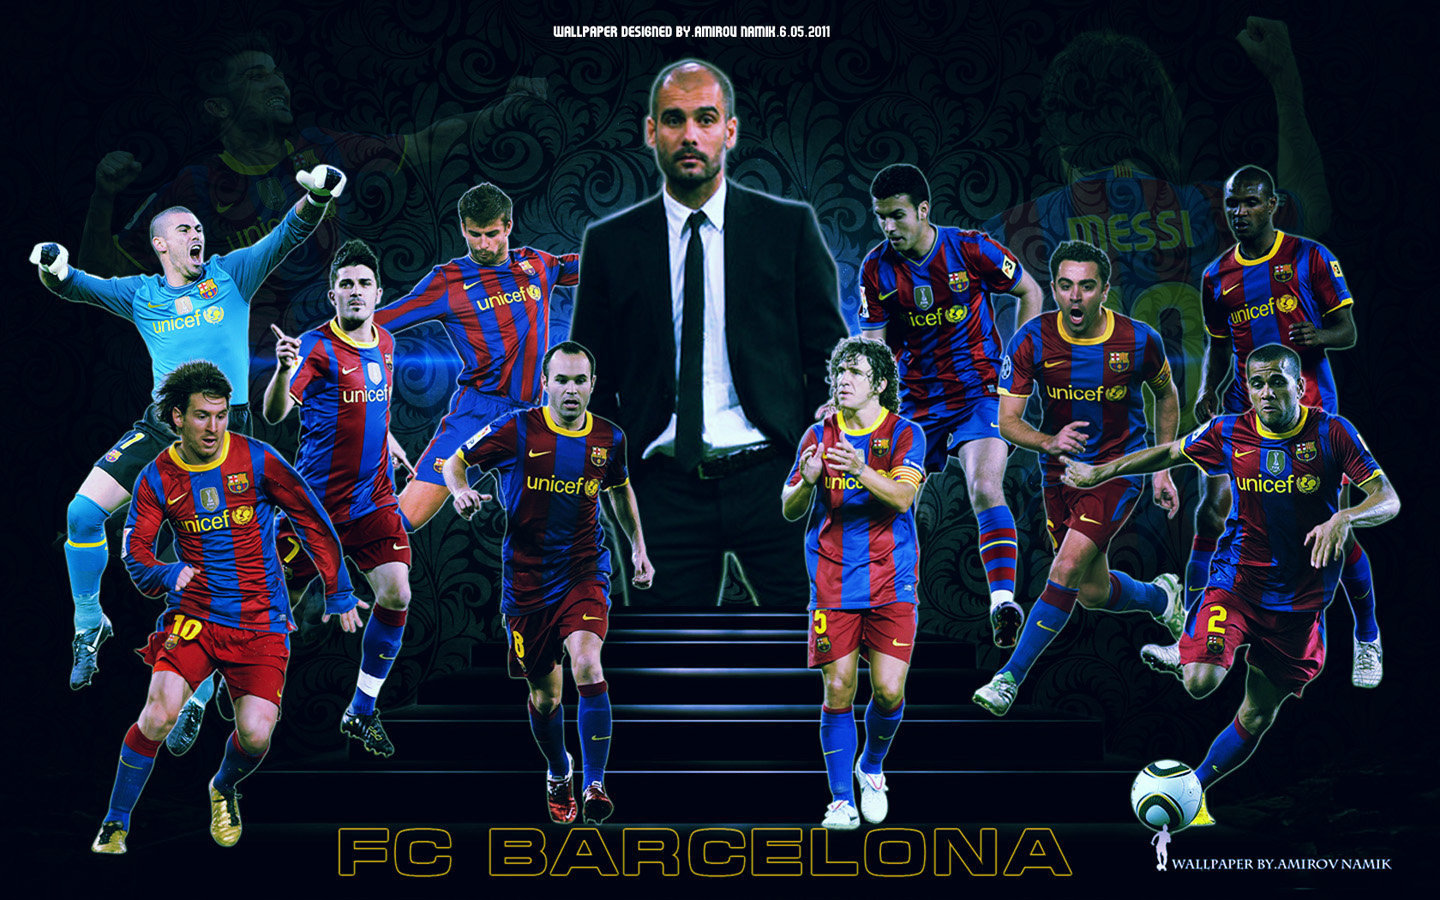 fond d'écran des joueurs de barcelone,équipe,joueur de football,joueur de football,joueur,personnage fictif